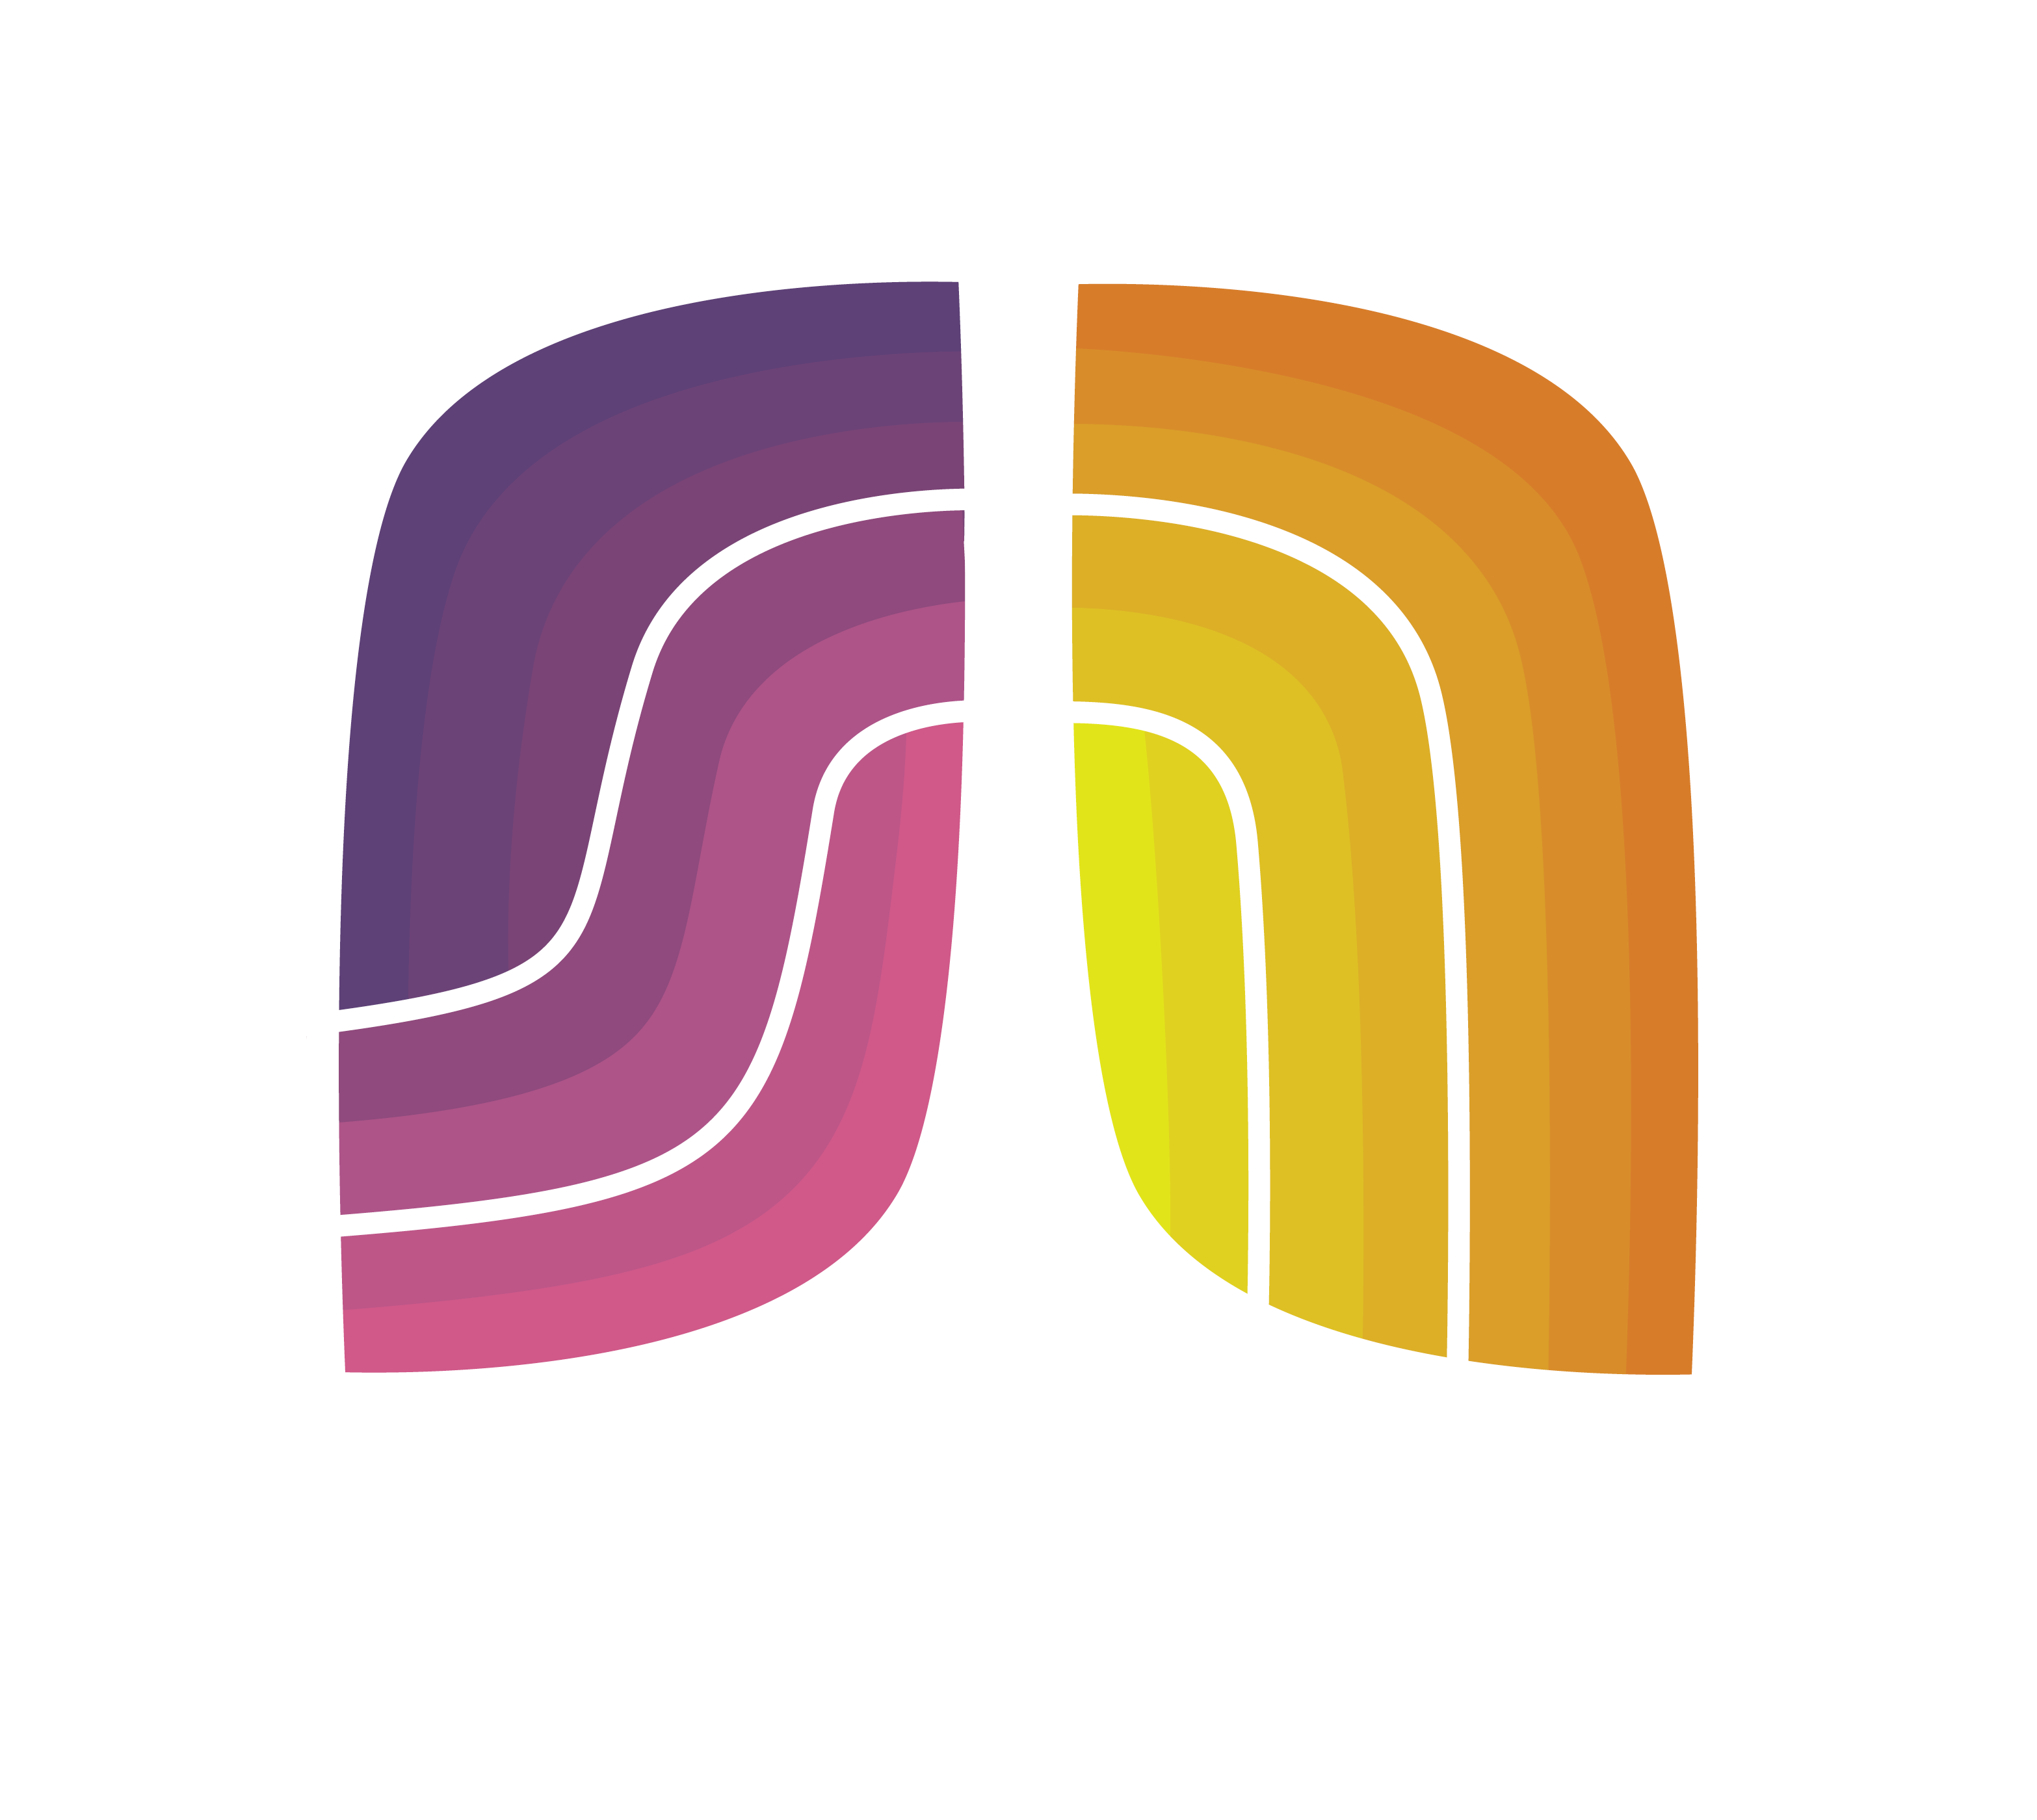 sn biomedical logo